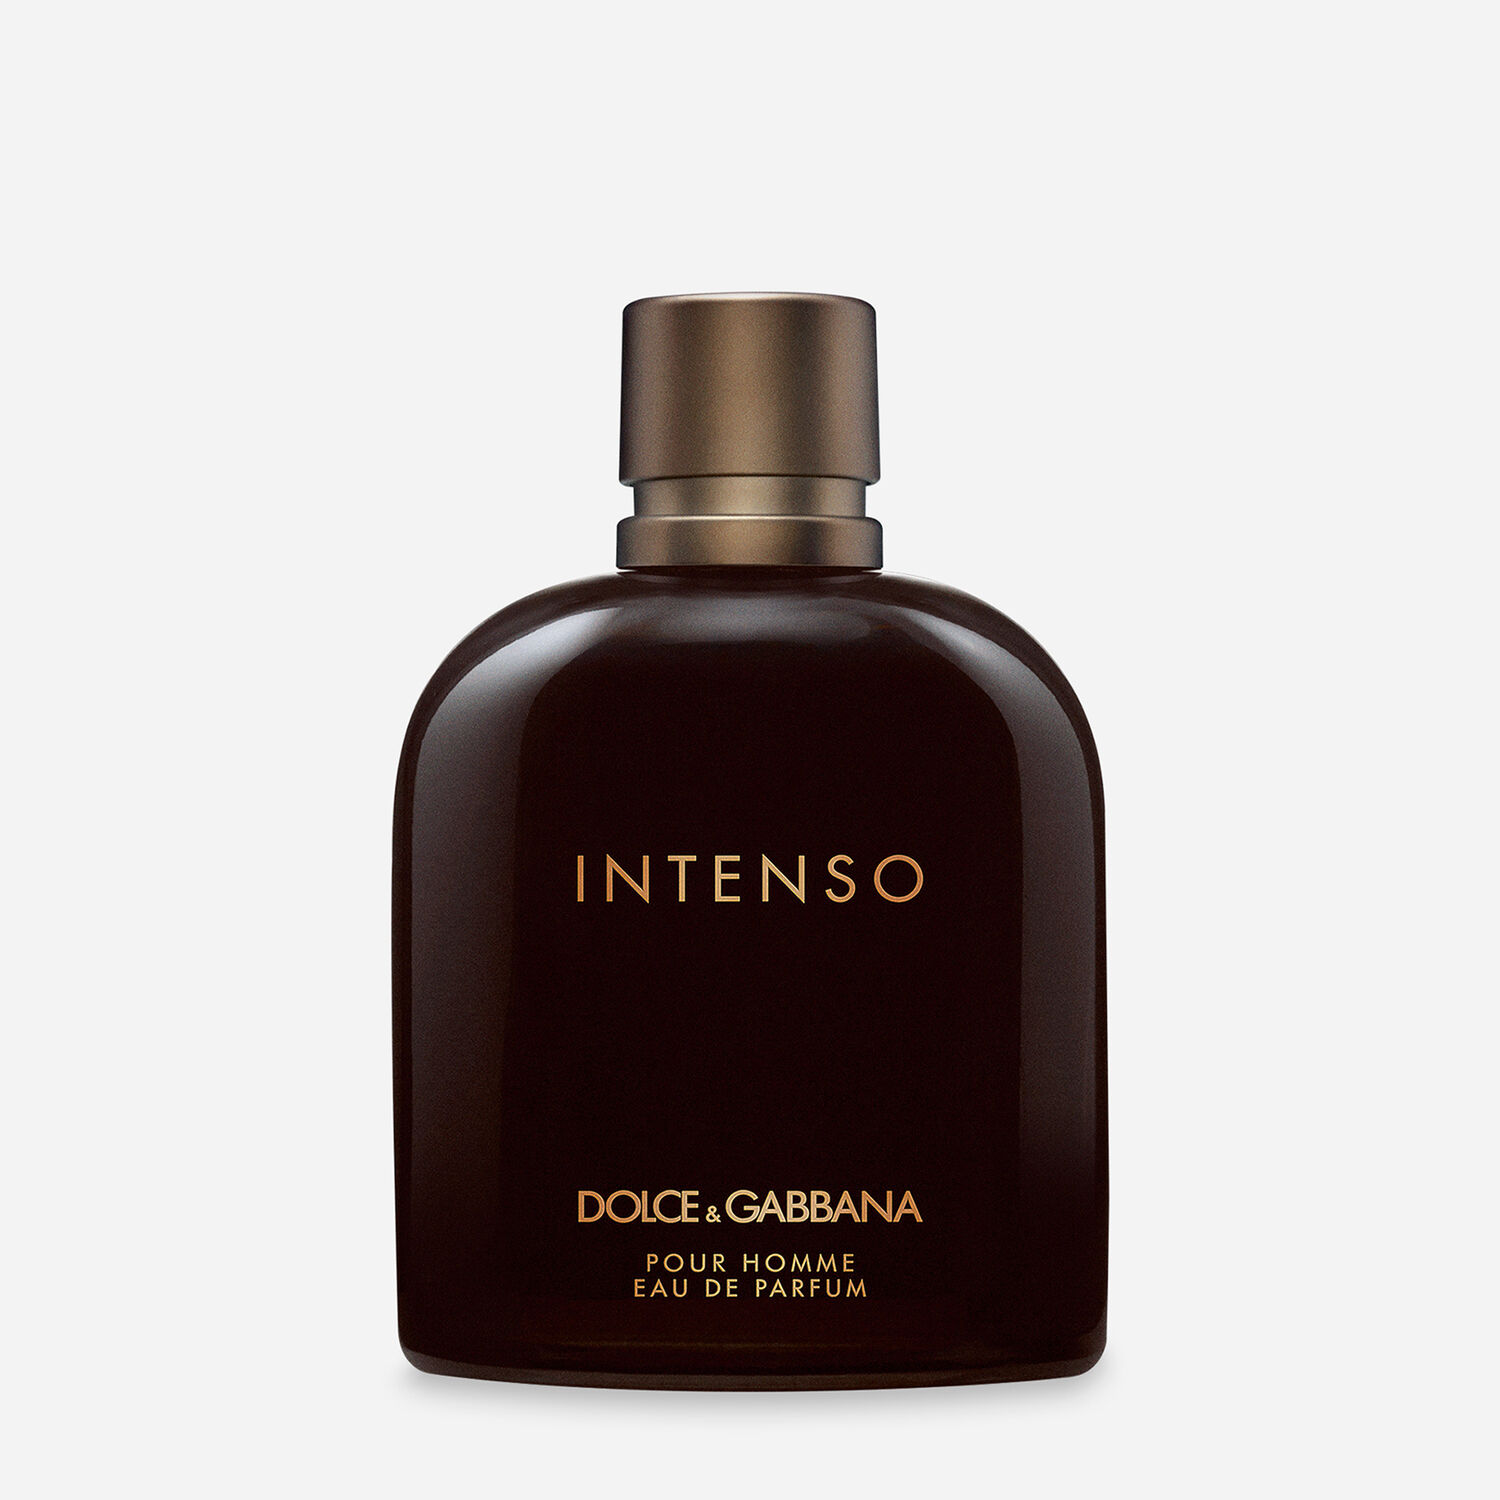 Dolce & Gabbana Eau de Toilette Spray for Men by D&G